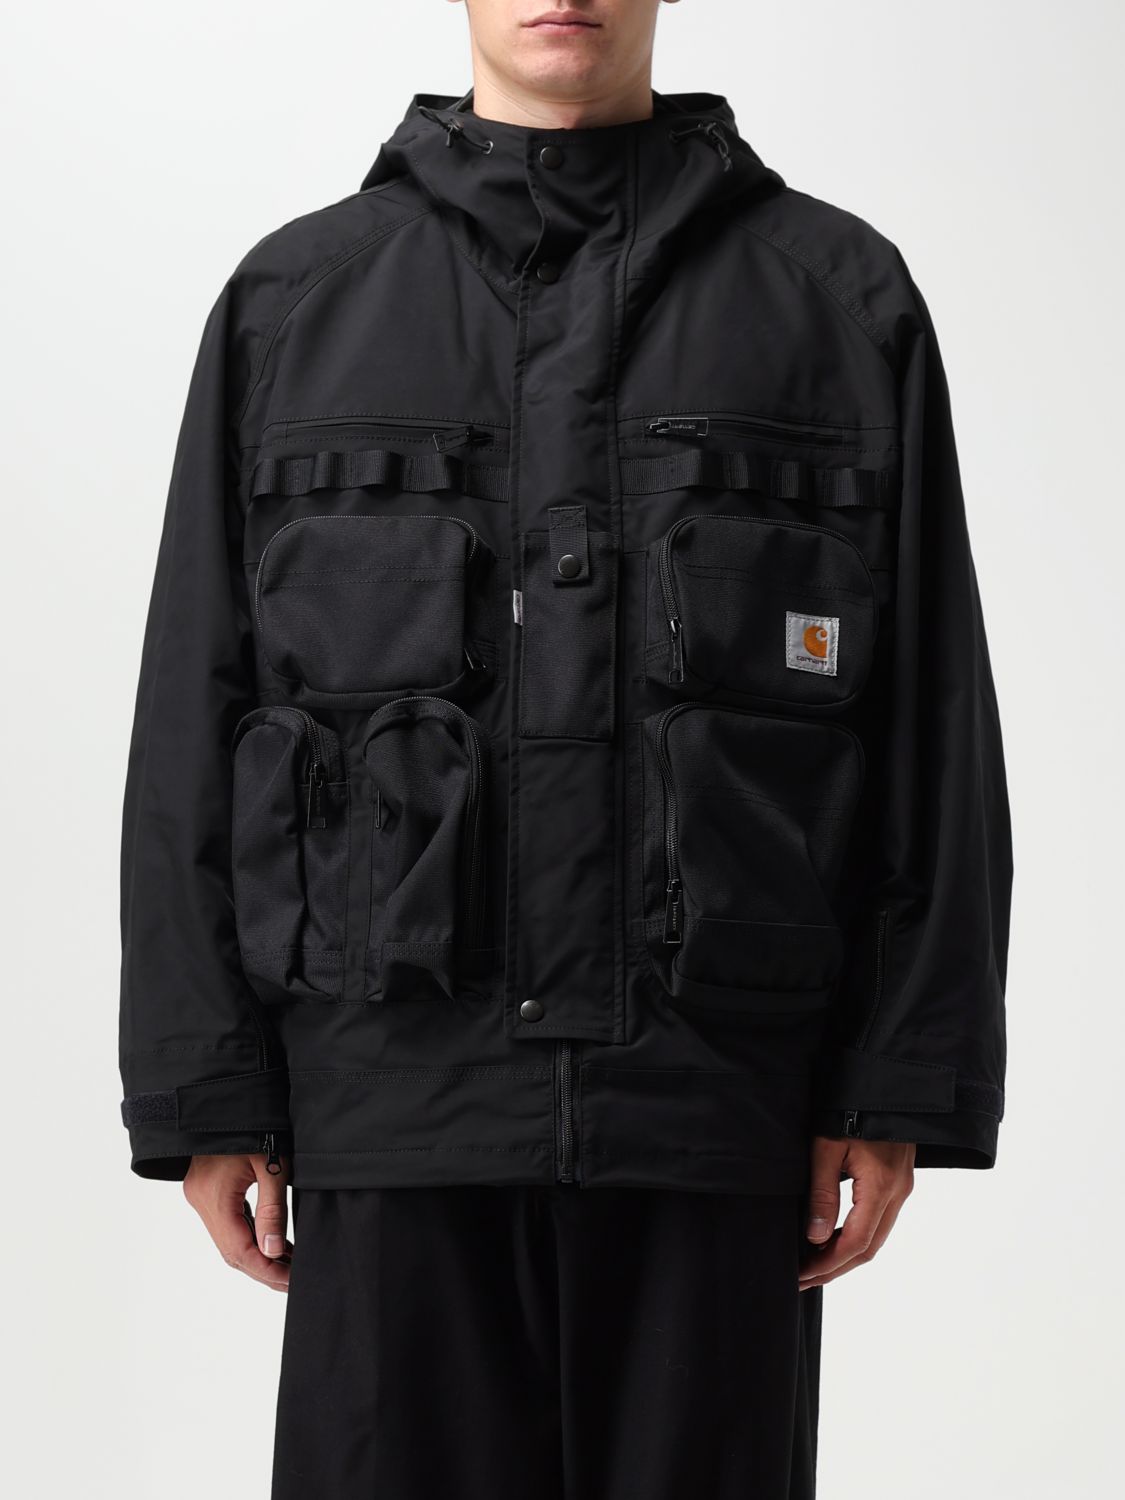 Junya Watanabe Collab. Jacket Carhartt In Black